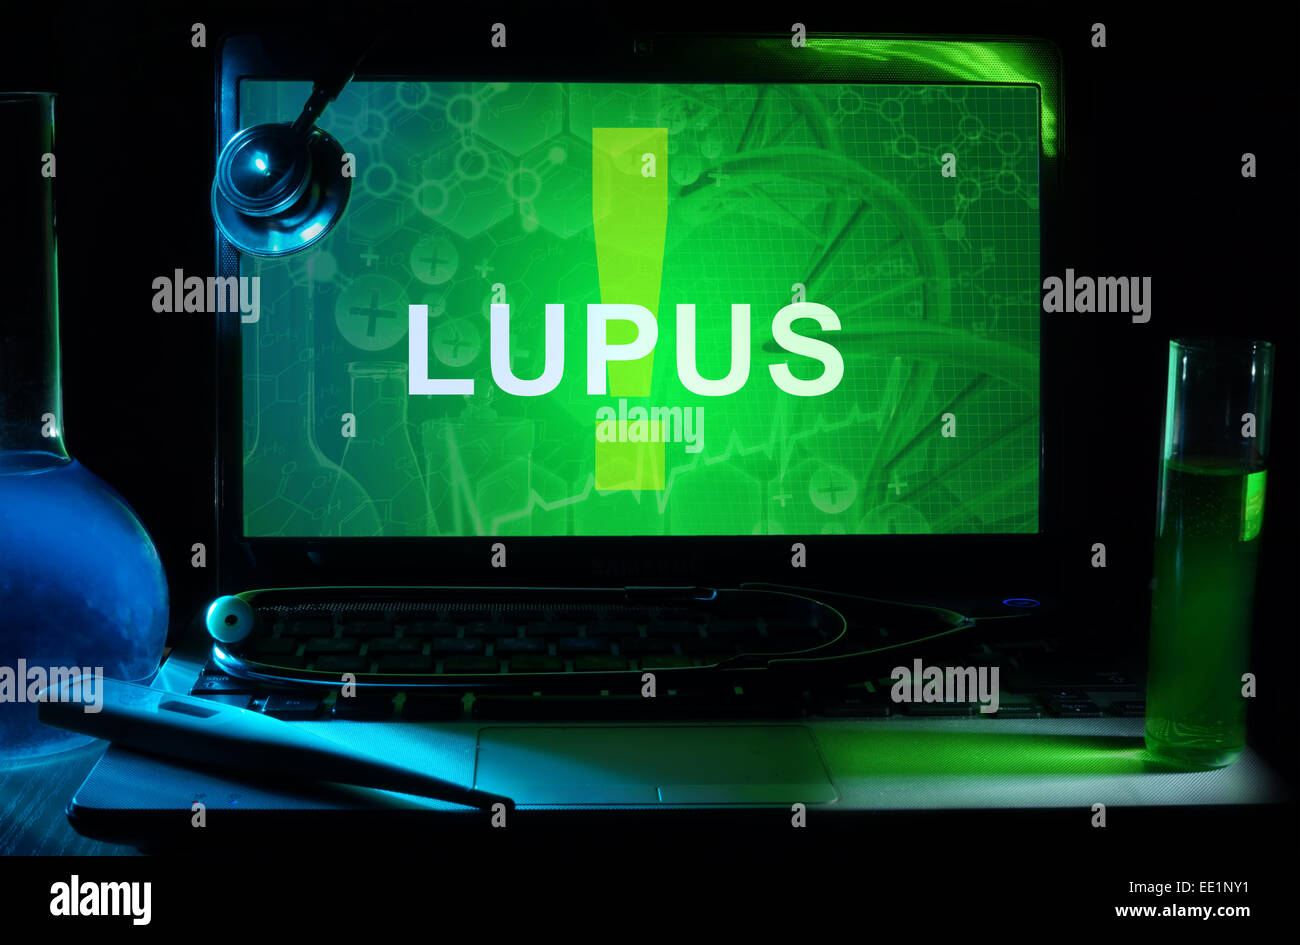 Portátil con palabras Lupus, tubos de ensayo y estetoscopio Foto de stock